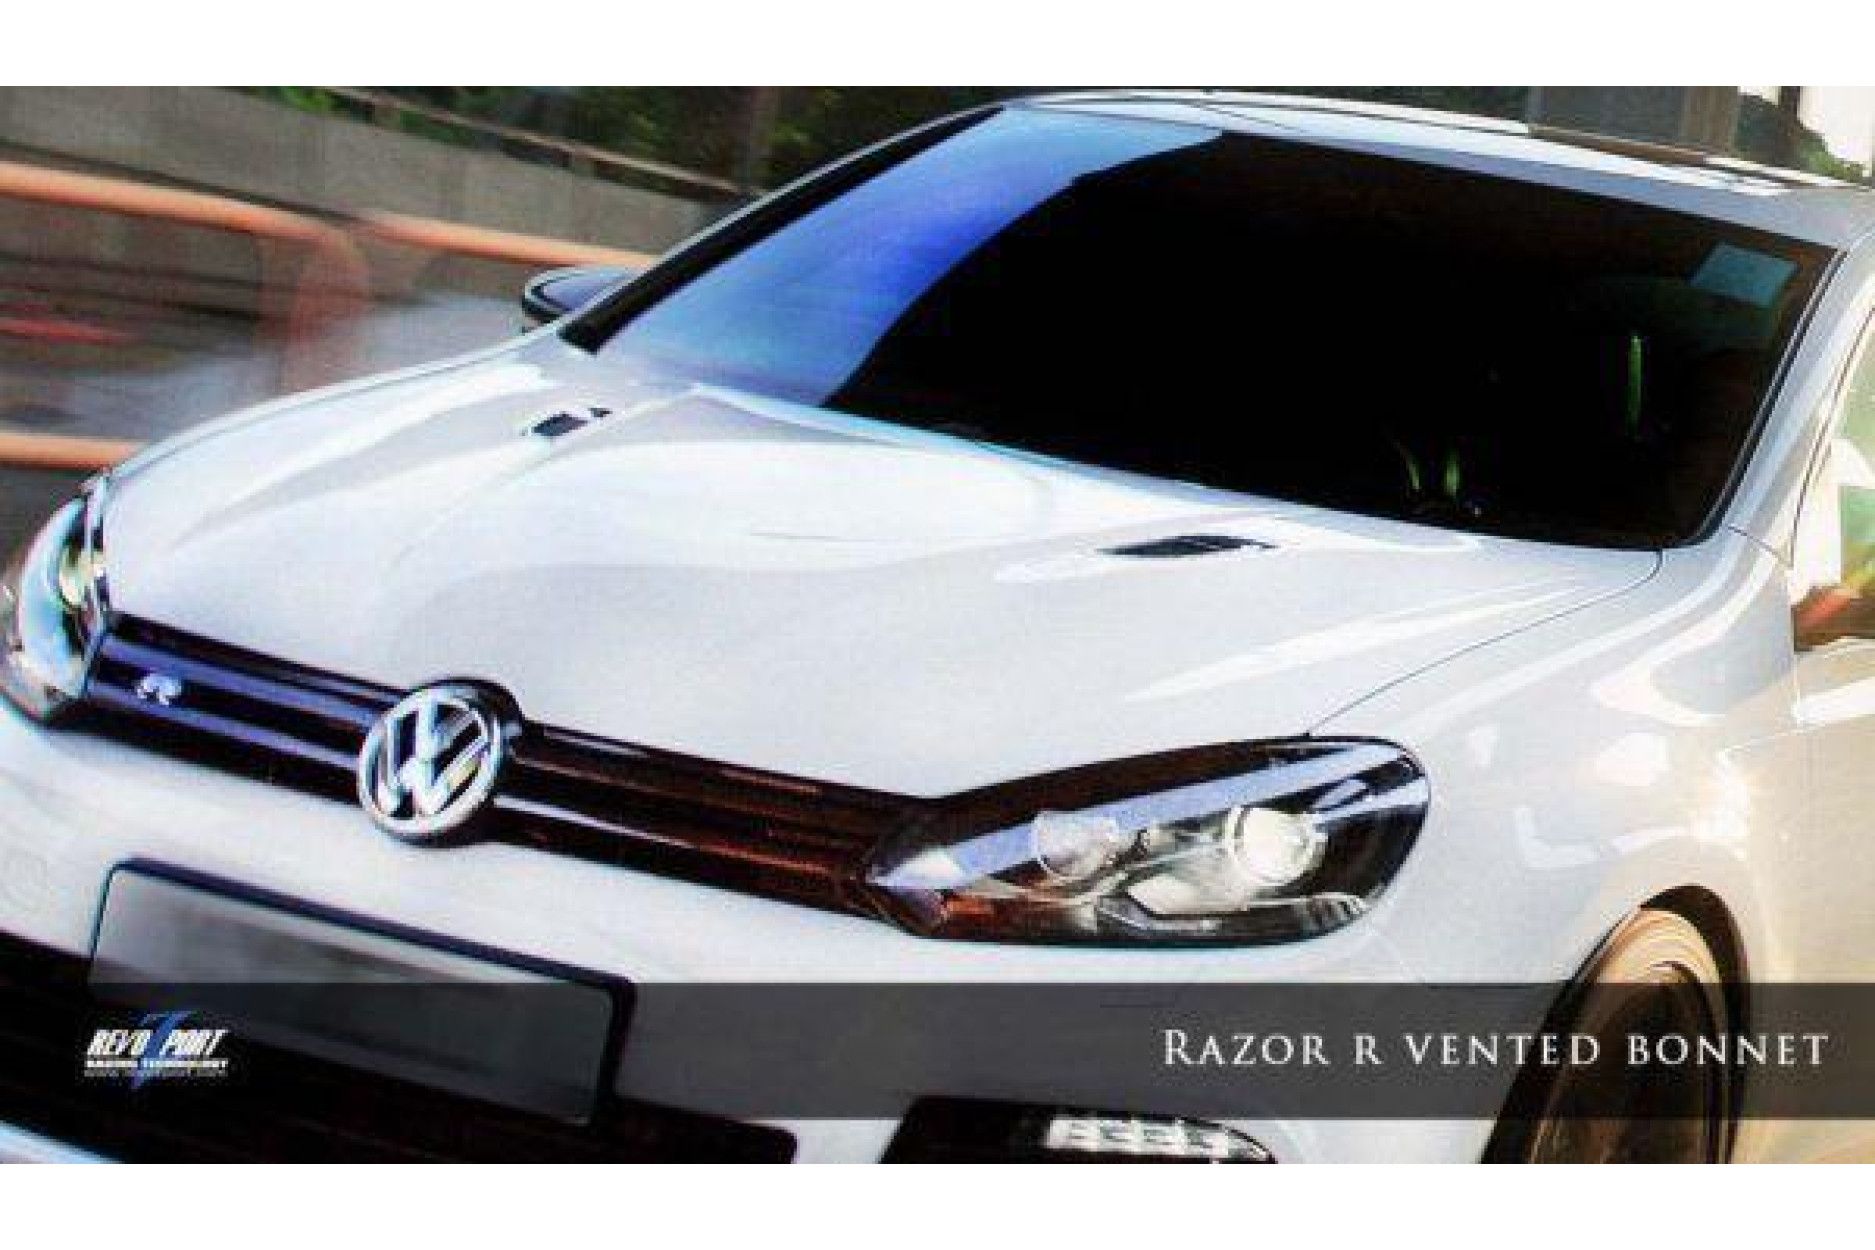 RevoZport Carbon hood for Volkswagen Golf MK6|Golf 6 R "Razor" with vents (11) 